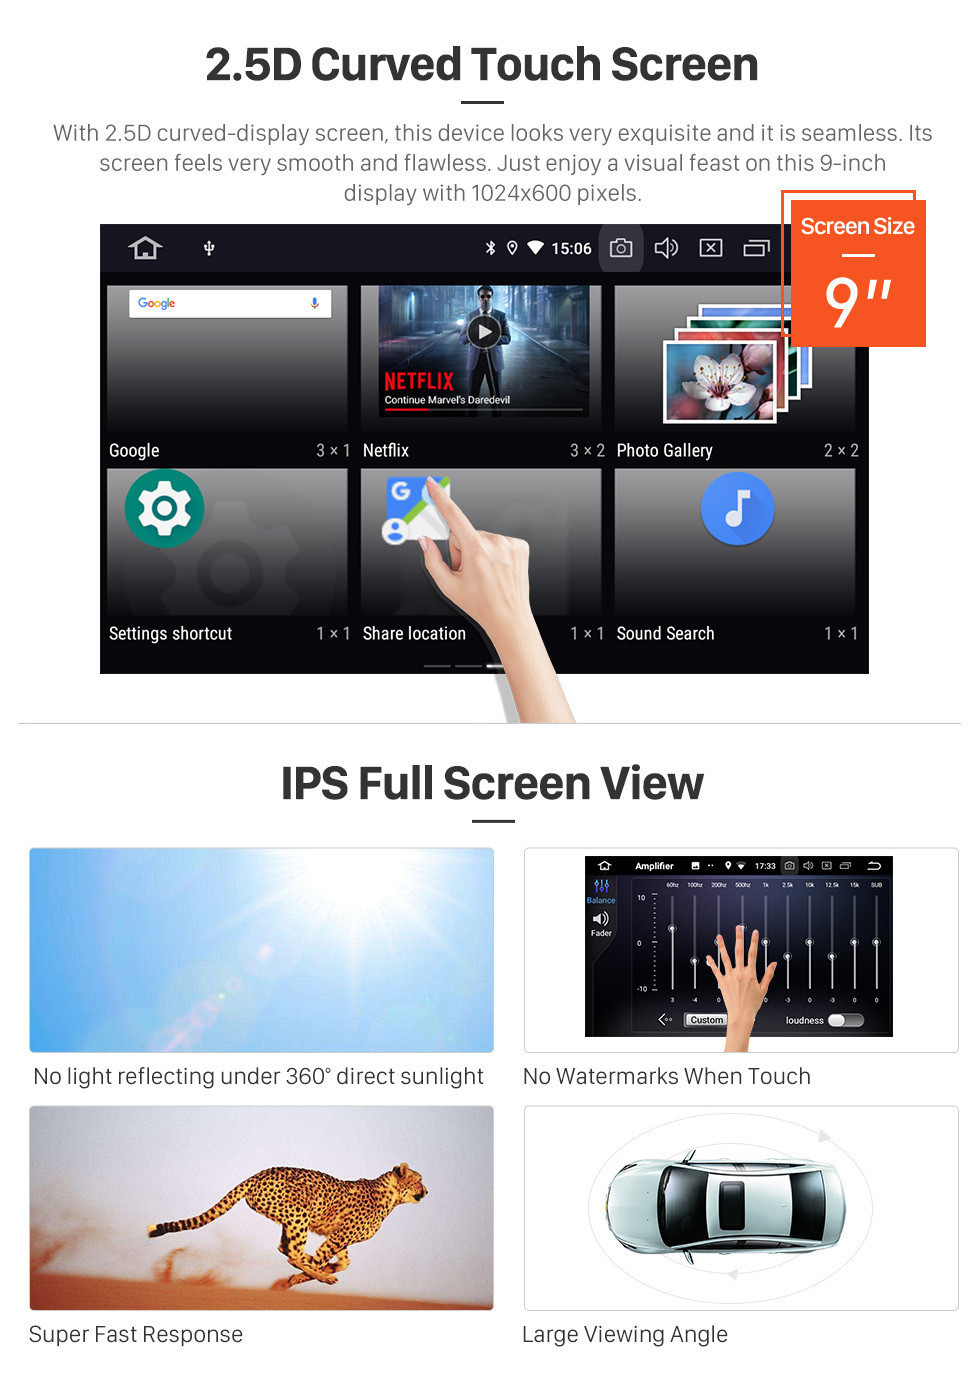 Seicane HD Touchscreen 2018-2019 Hyundai ix35 Android 11.0 9 polegada Navegação GPS Rádio Bluetooth Carplay AUX suporte de Música SWC OBD2 Link de Espelho câmera de Backup